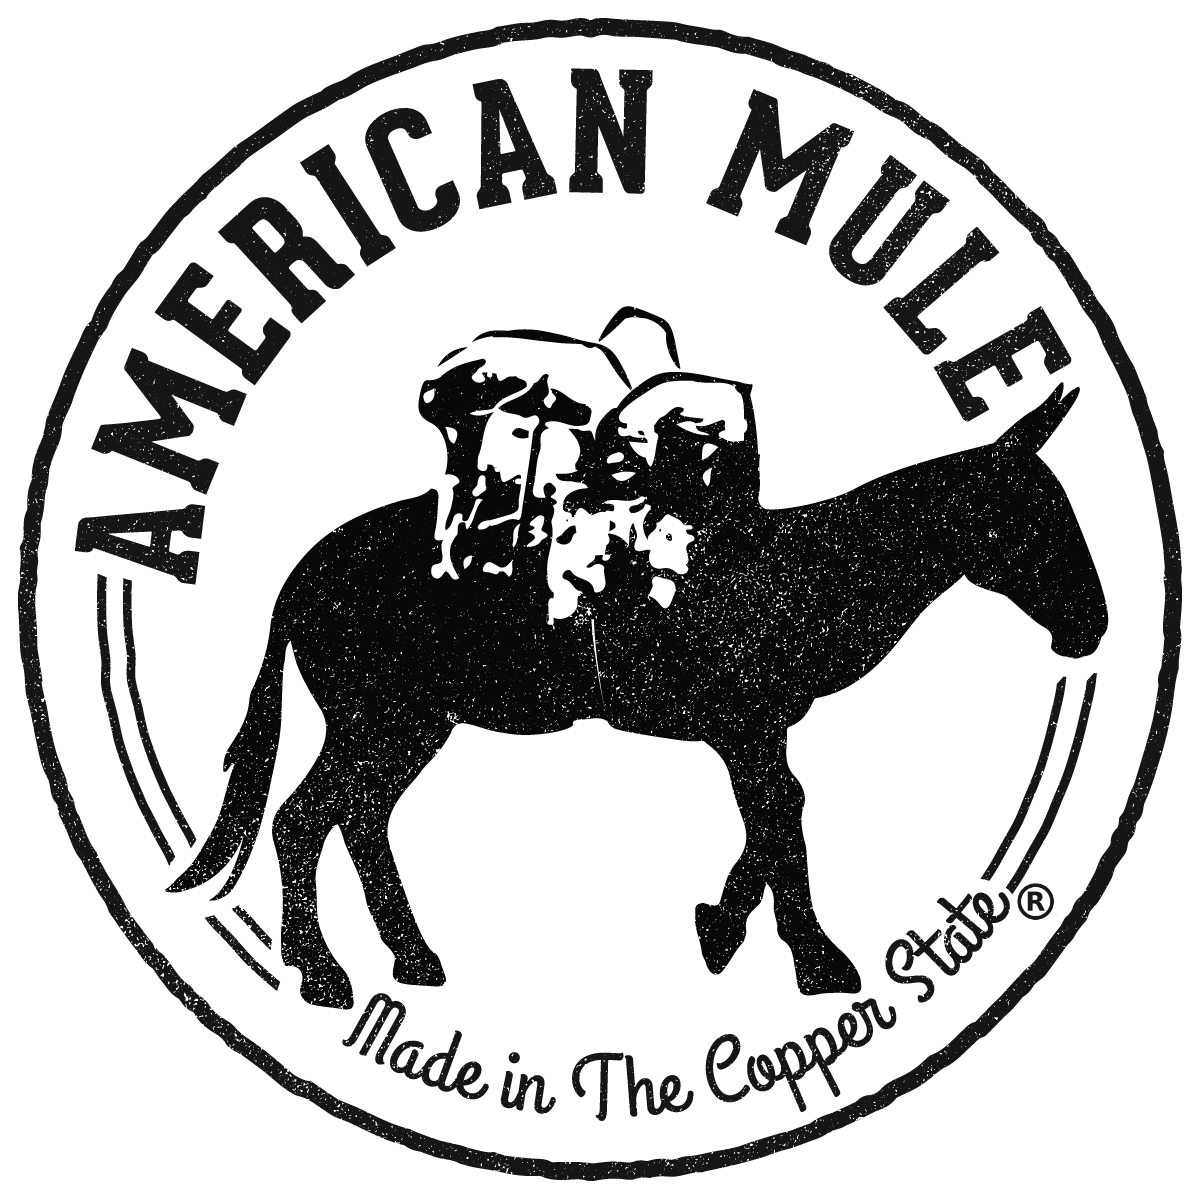 American Mule